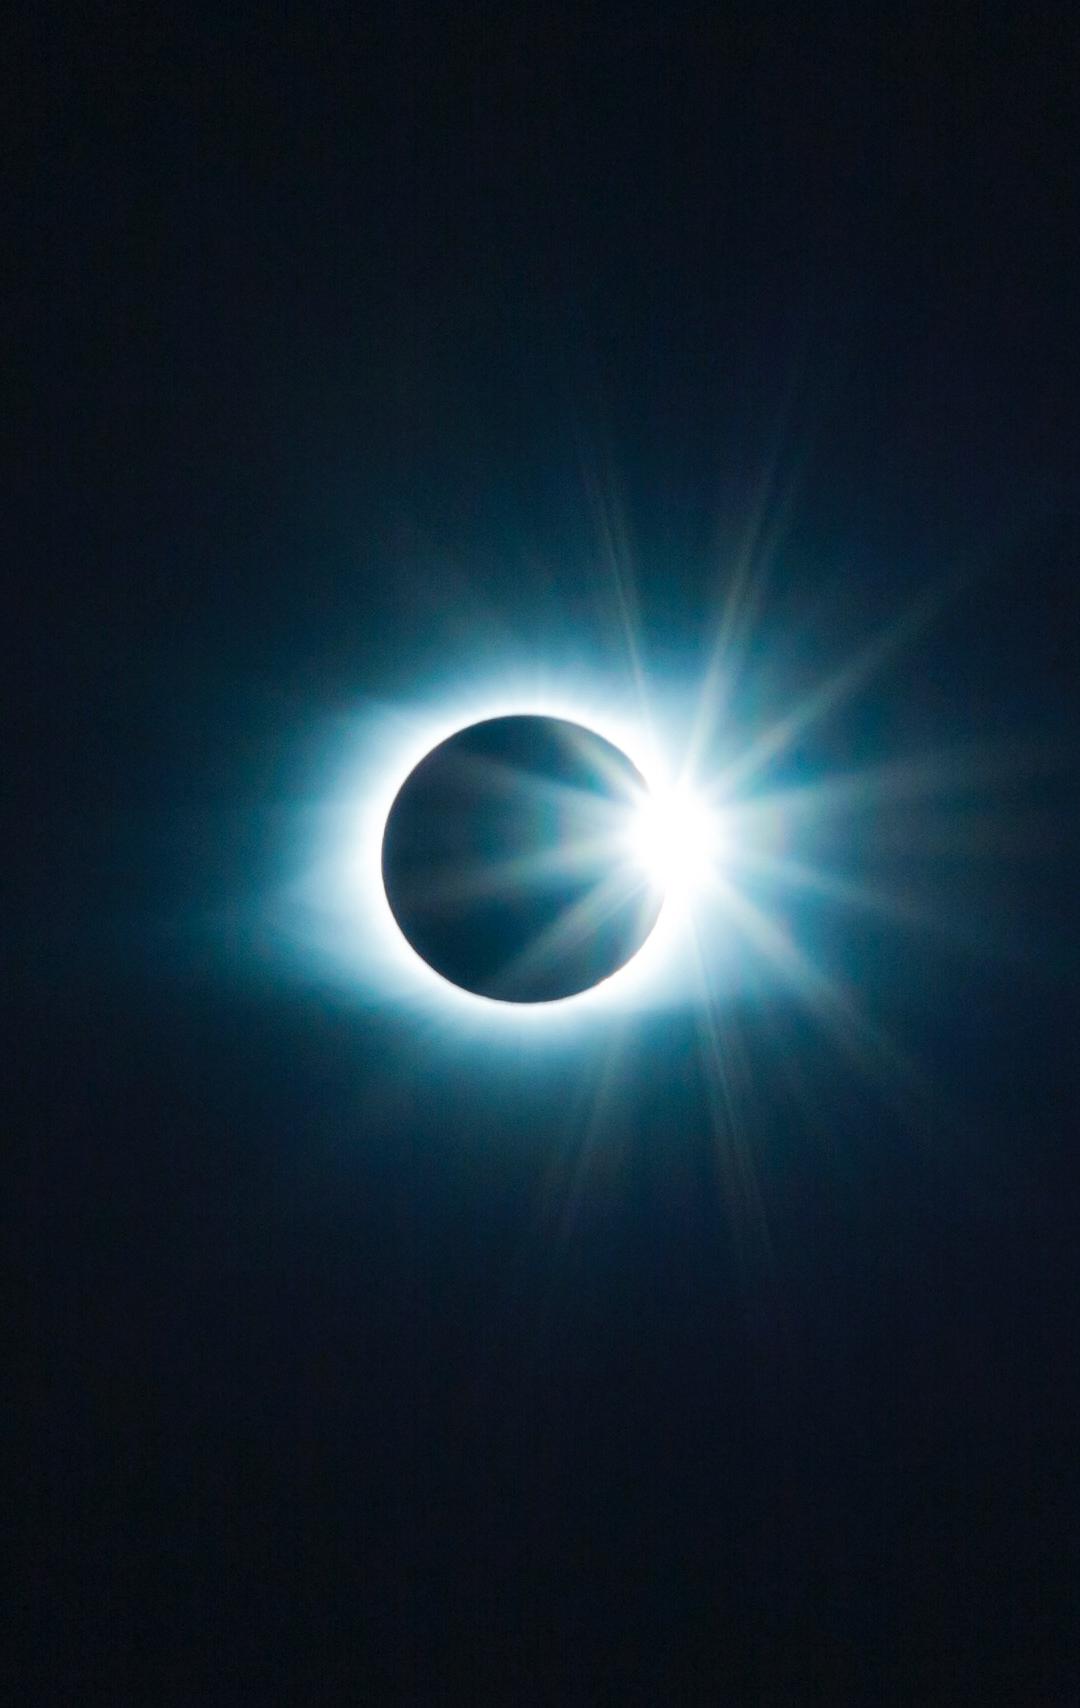 Sun Moon Eclipse And Light iPhone Wallpaper Idrop News